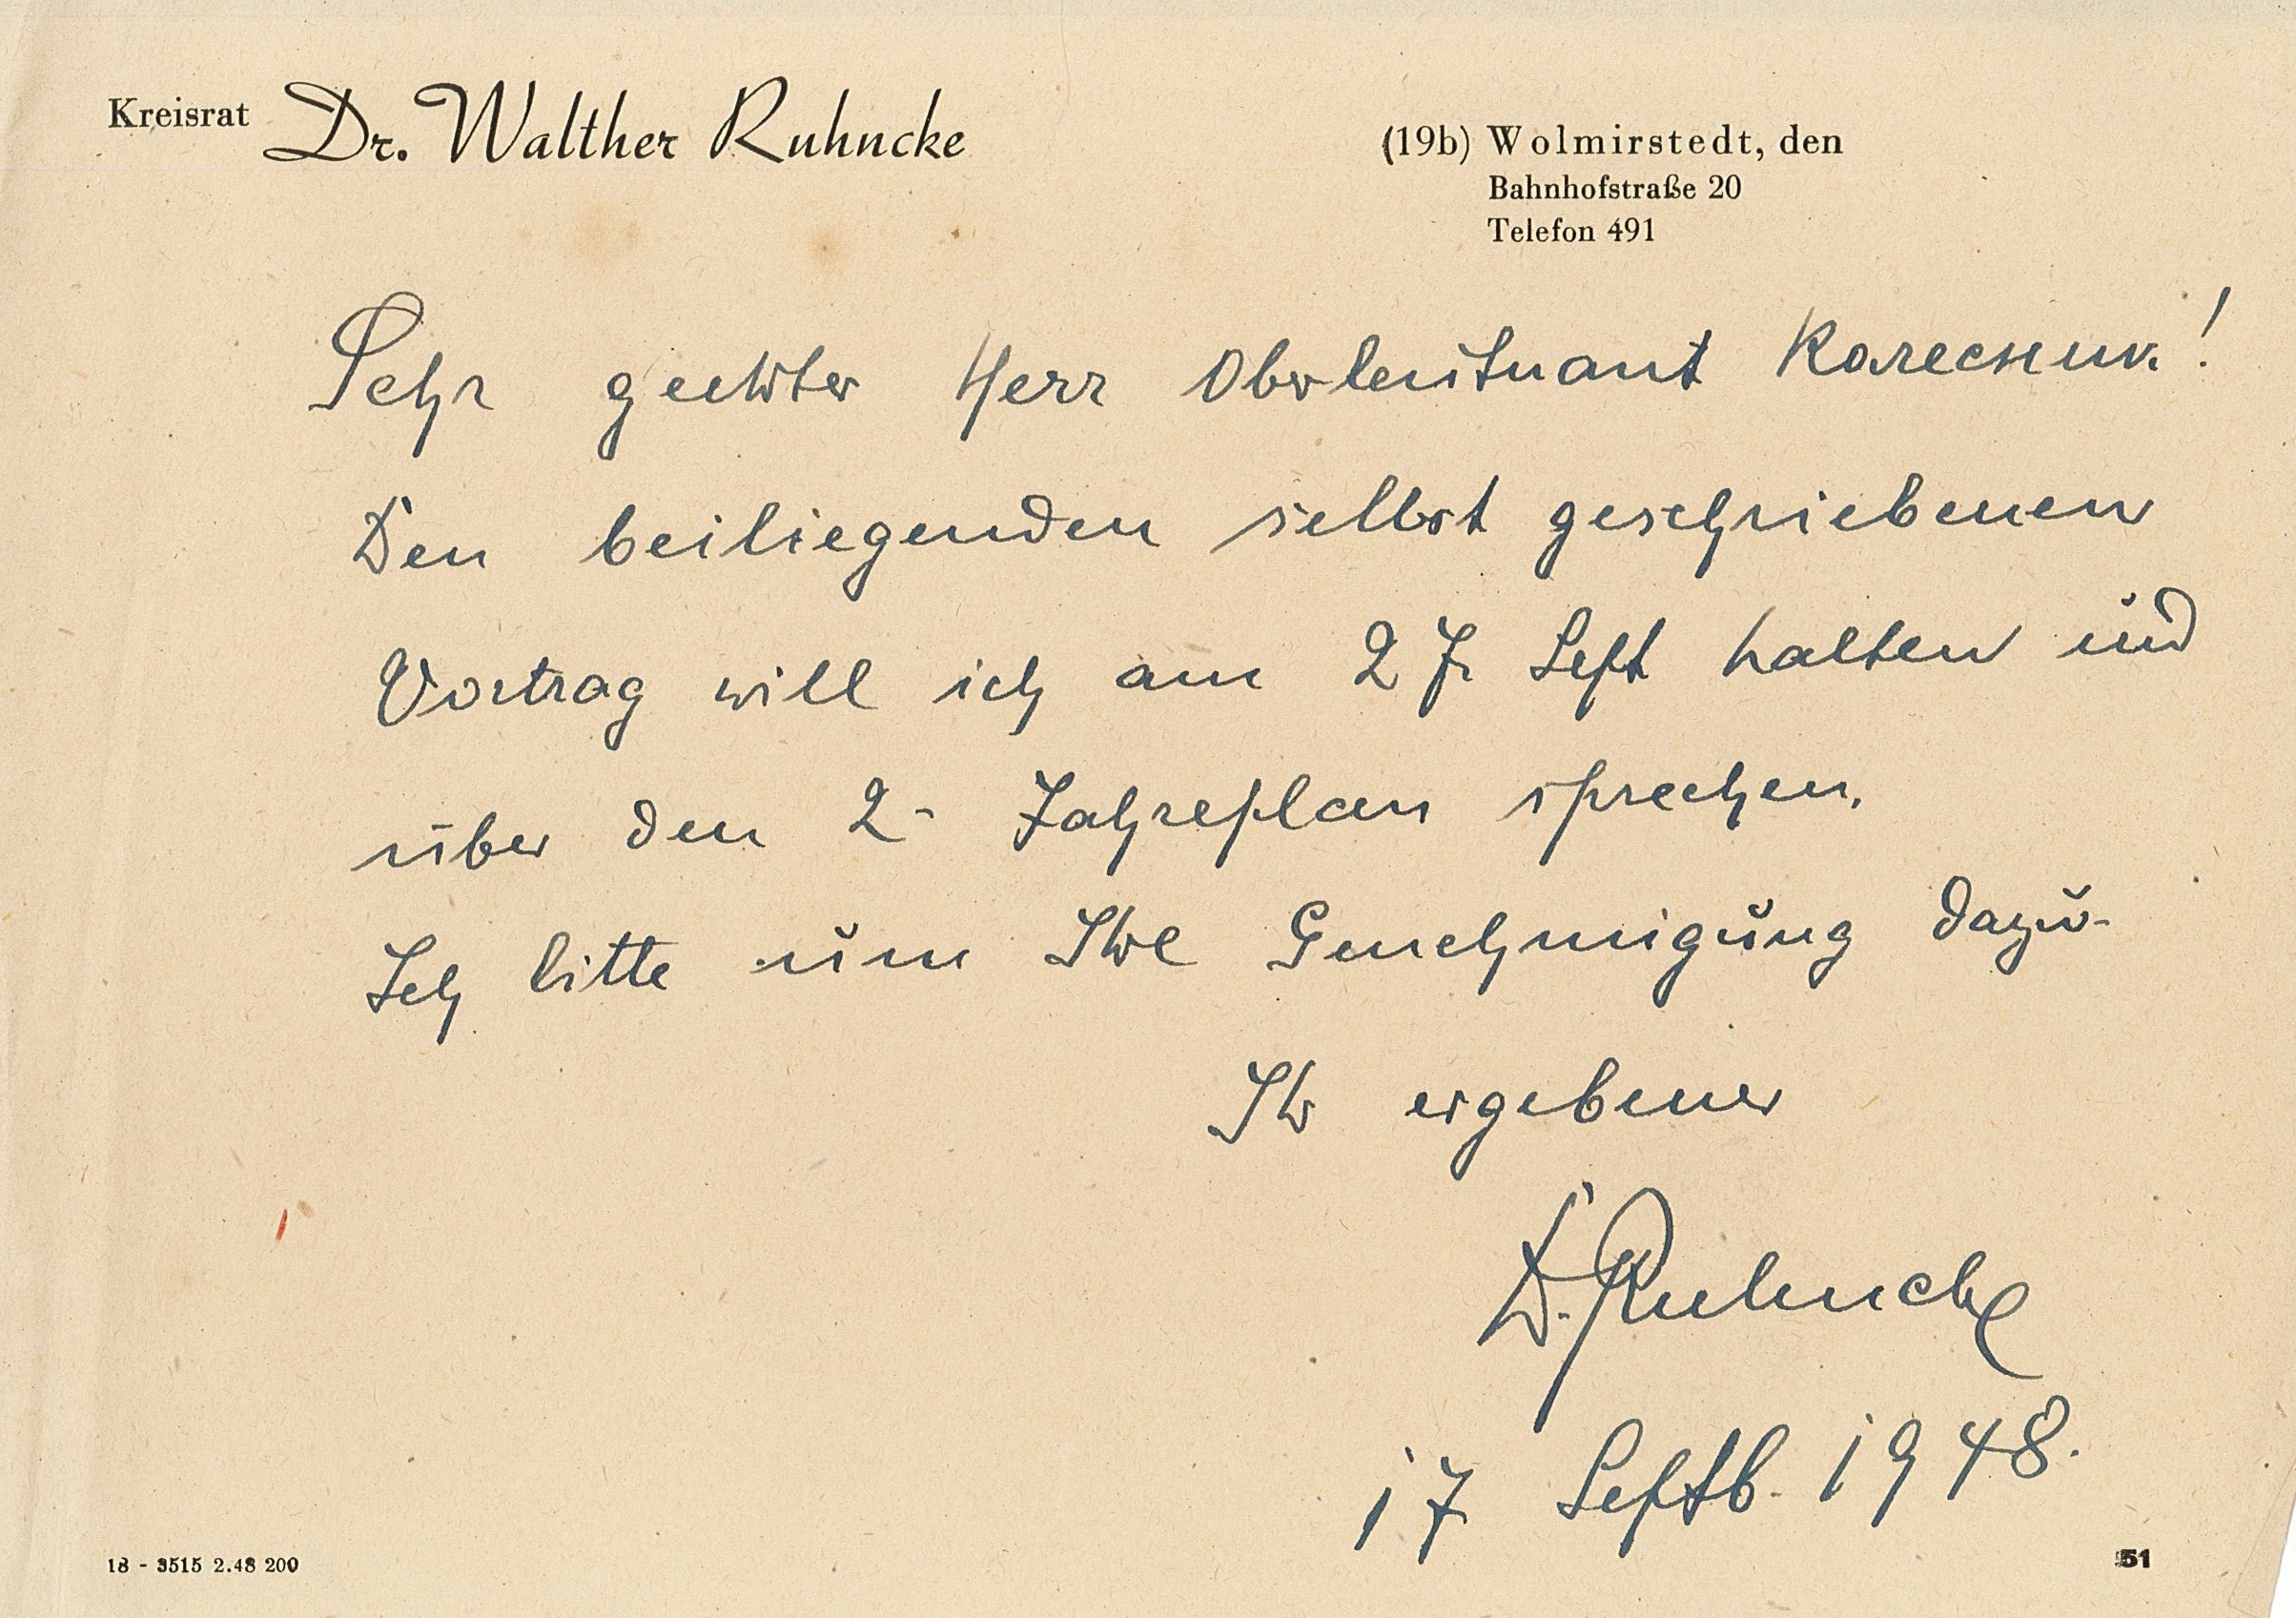 Anschreiben für Übergabe Vortragsinhalt zur Prüfung an Kreiskommandatur Wolmirstedt, 17.09.1948 (Museum Wolmirstedt RR-F)